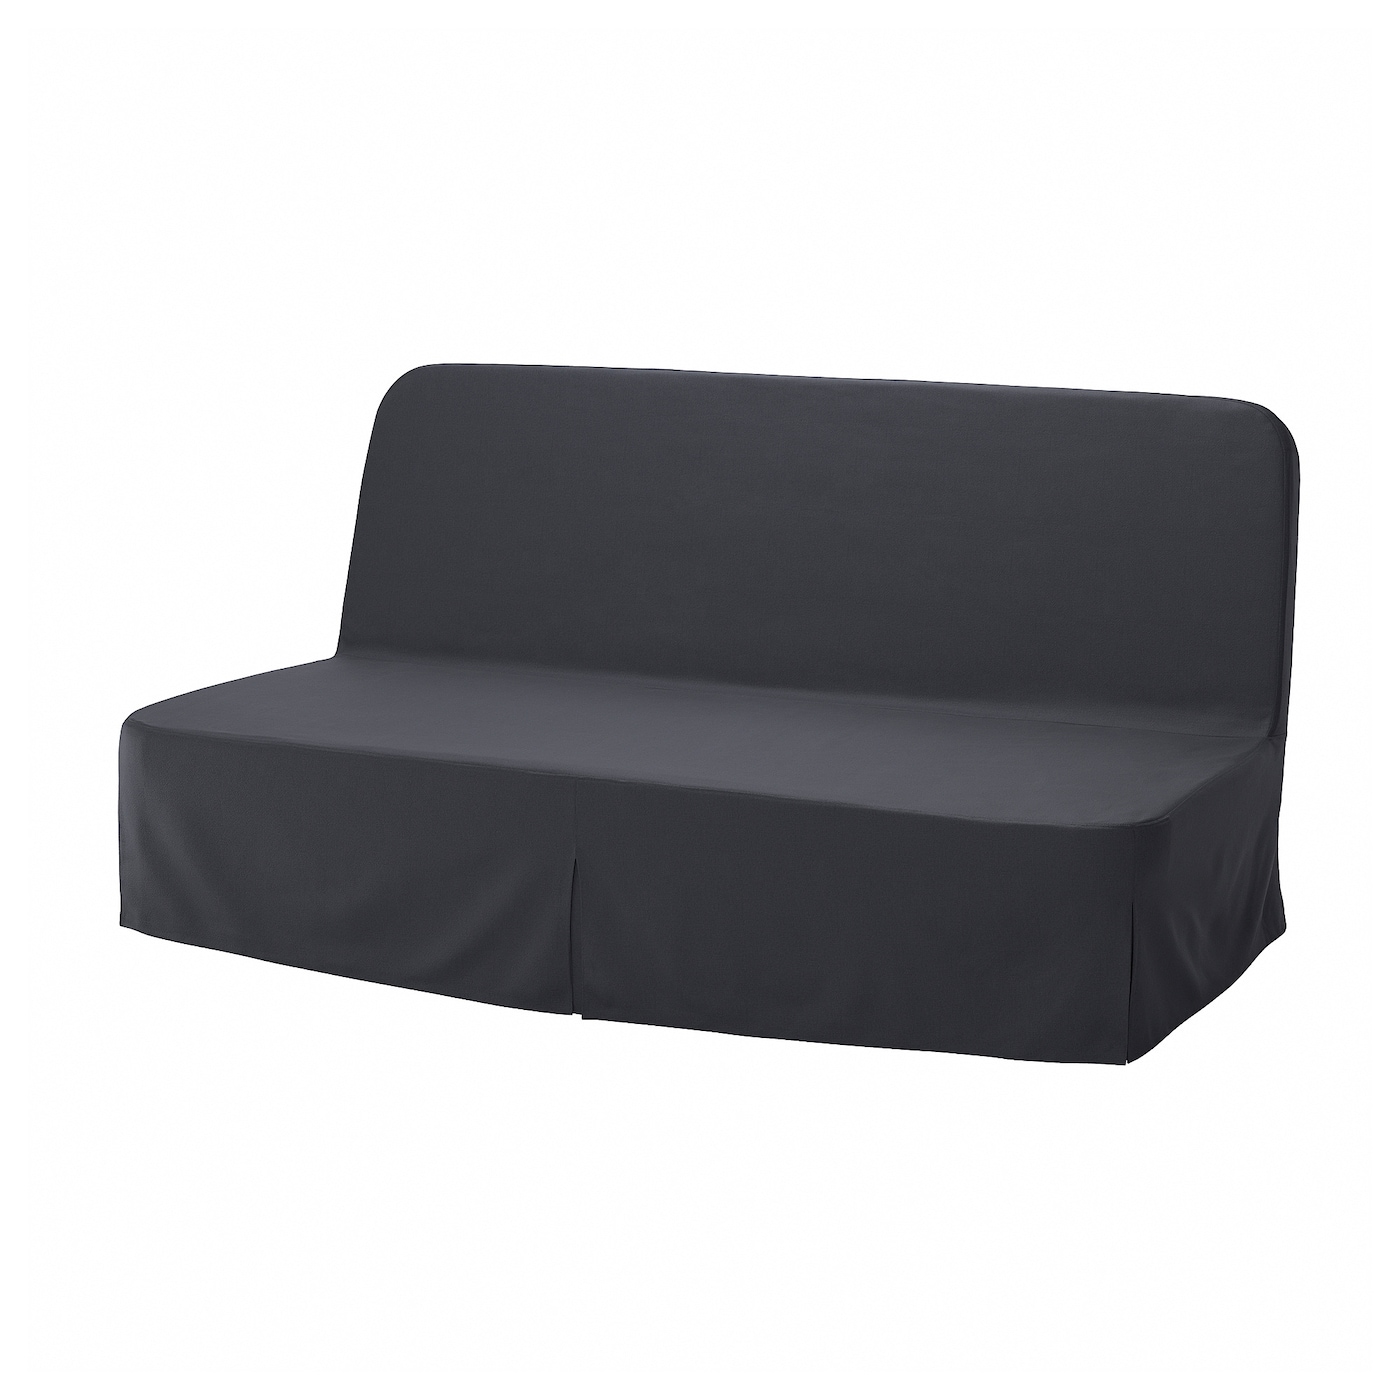 NYHAMN 3-местный диван-кровать с поролоновым матрасом Naggen/темно-серый IKEA